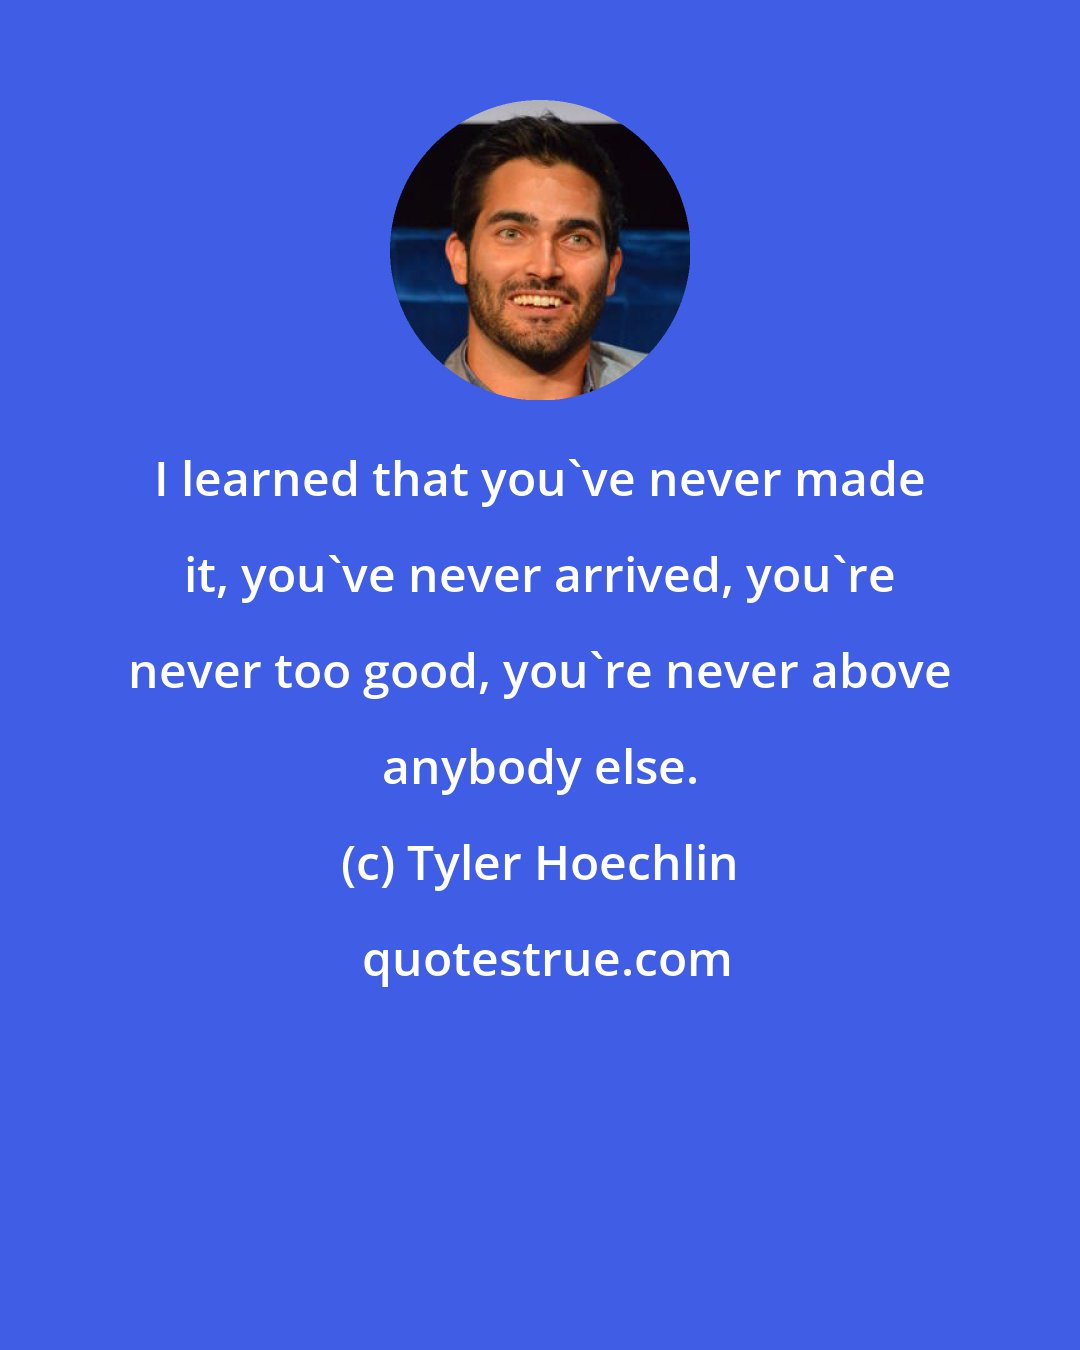 Tyler Hoechlin: I learned that you've never made it, you've never arrived, you're never too good, you're never above anybody else.